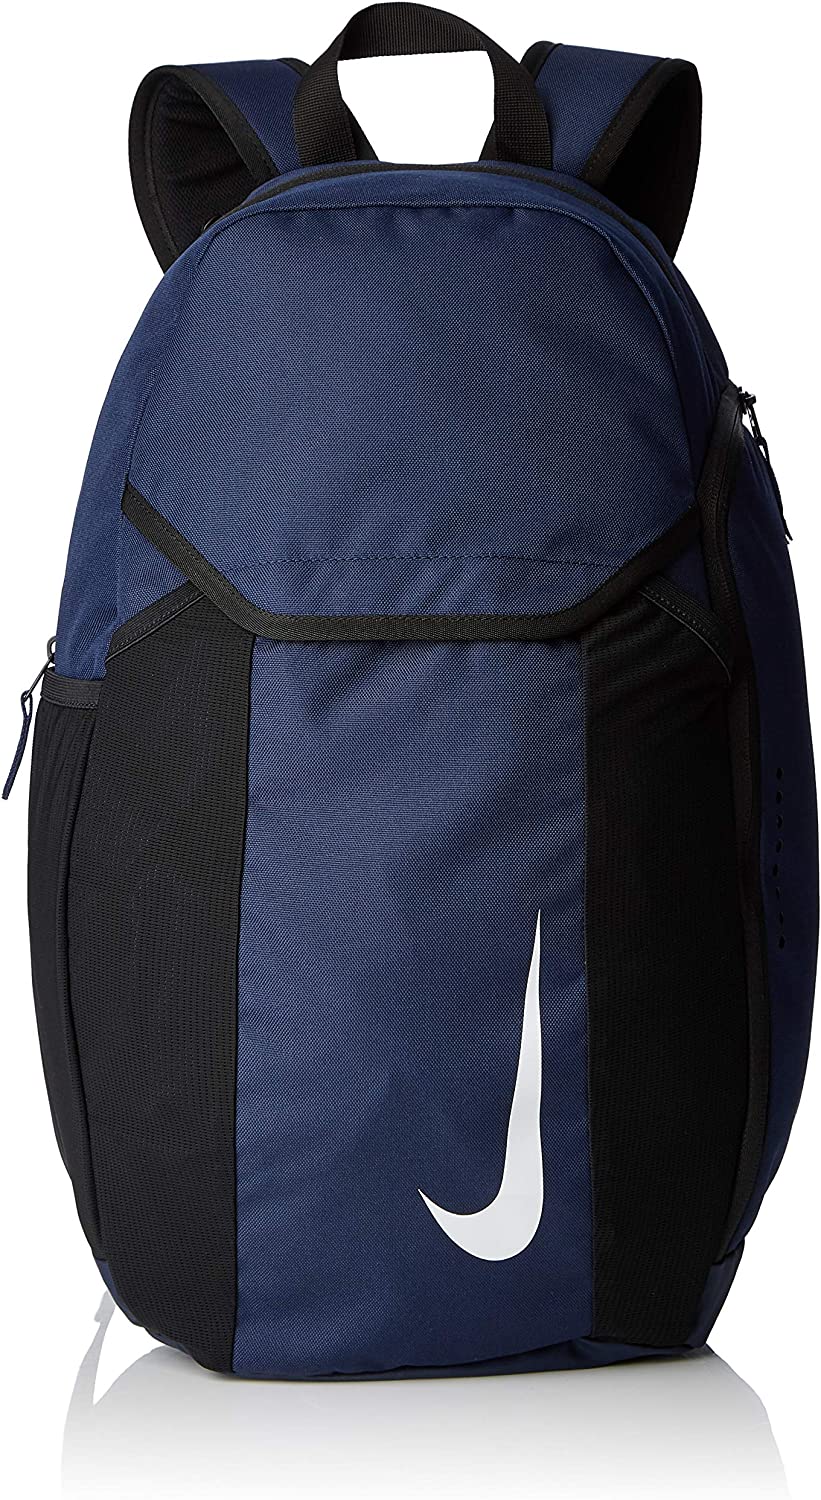  3. NIKE-Academy-Team-Backpack - Kid Basketball Bag - NIKE Basketball Bag 